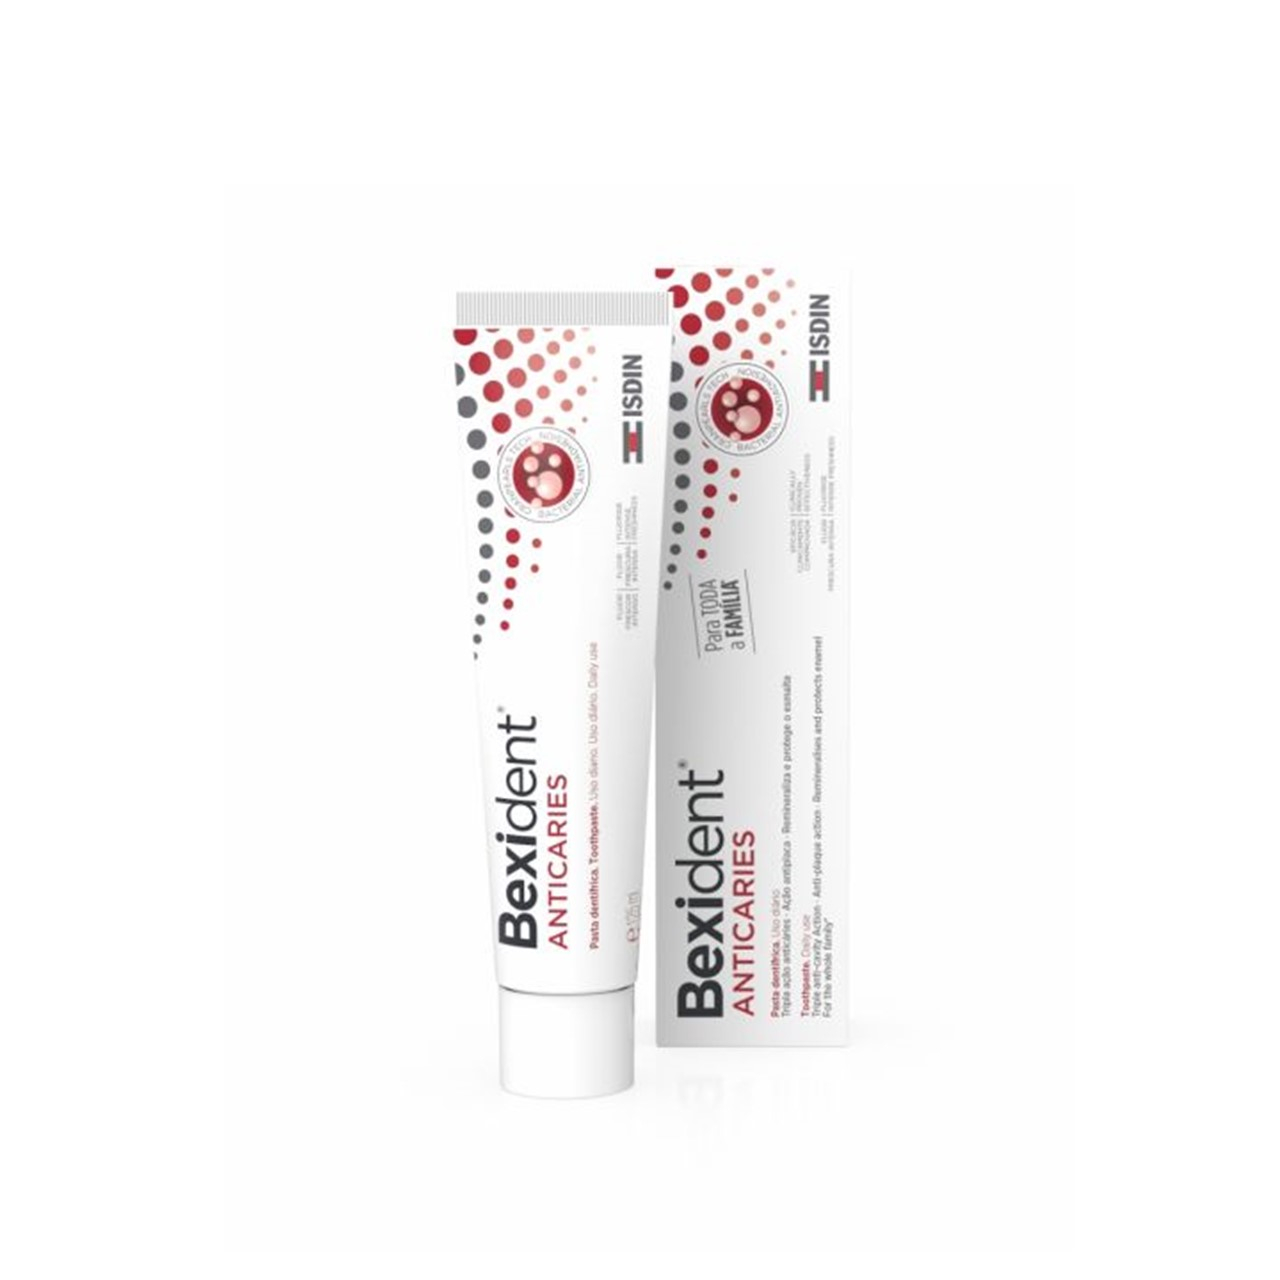 ISDIN Bexident Anticavity Toothpaste 75ml (2.54fl oz)